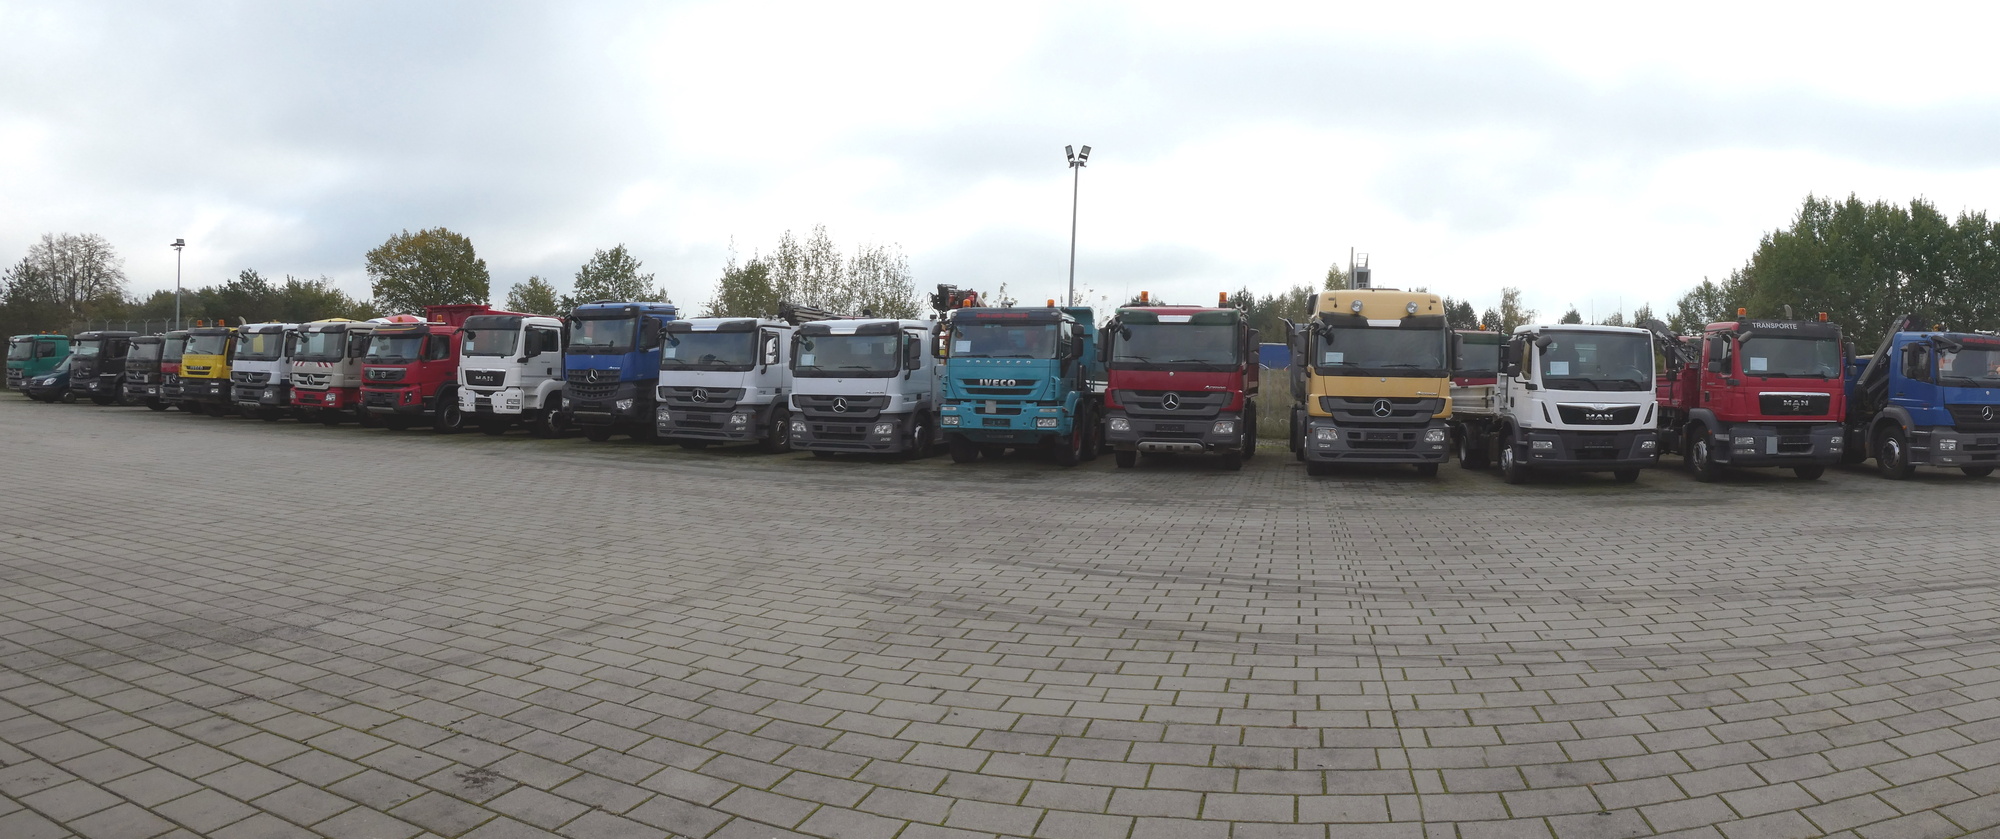 Henze Truck GmbH undefined: photos 1